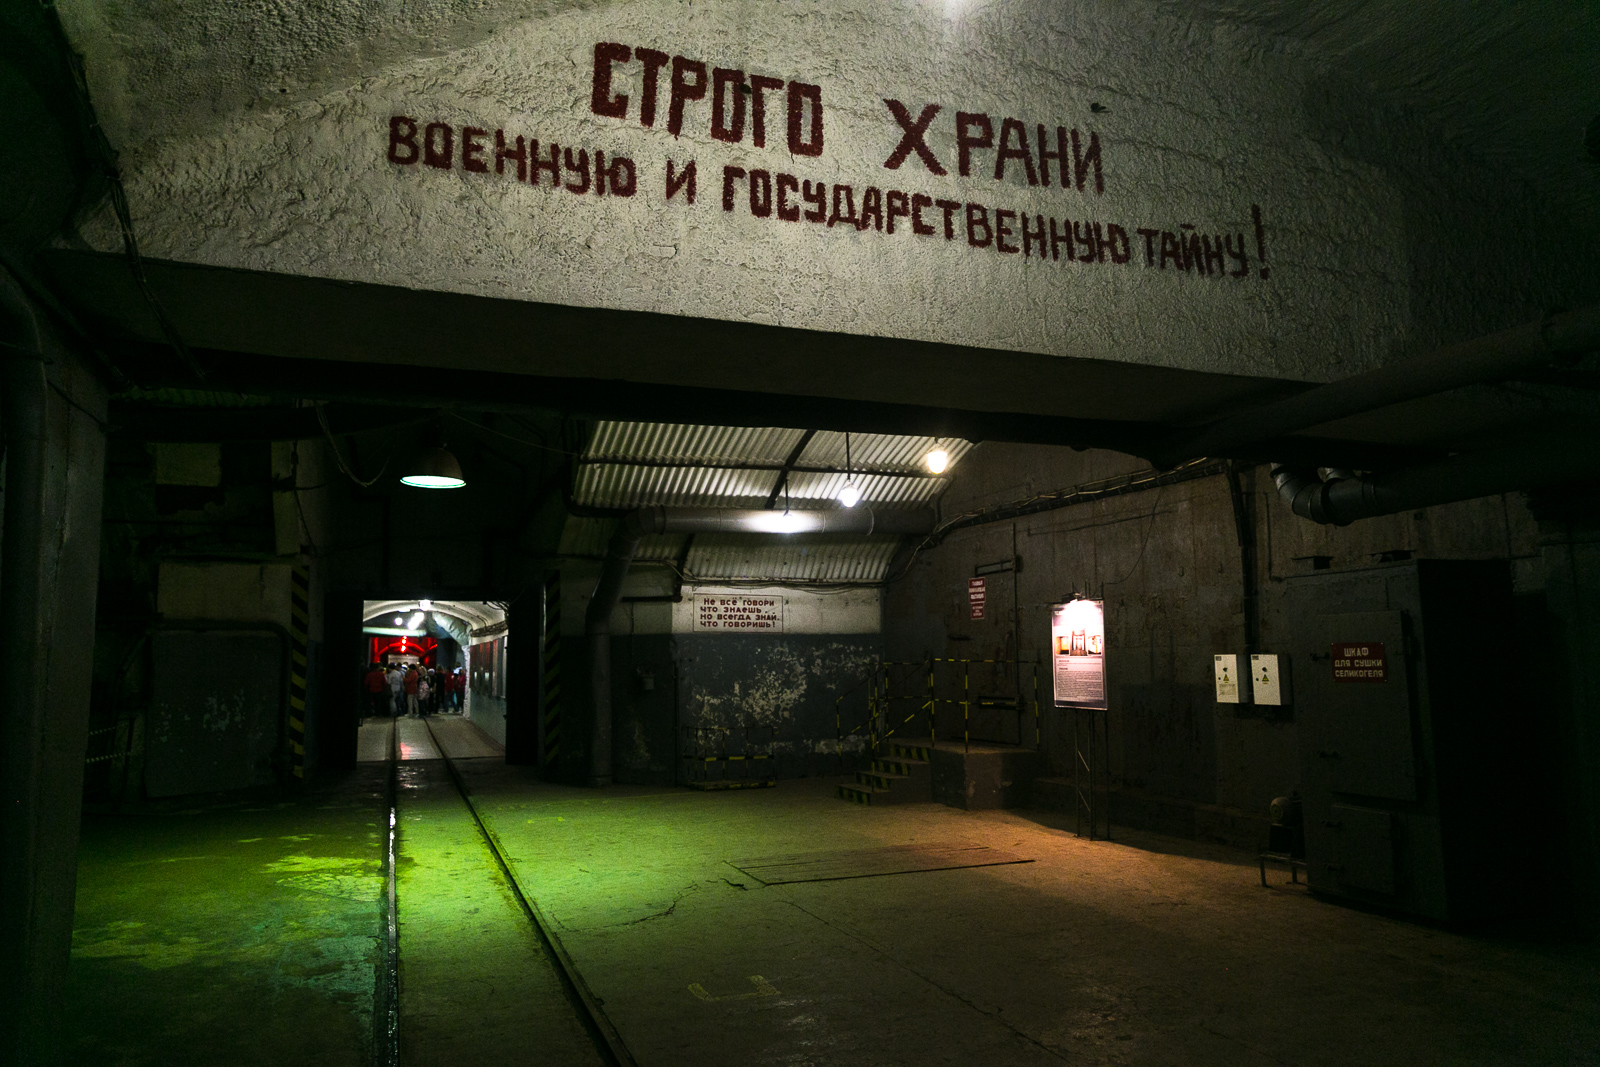 1/11. Балаклава је одмаралиште на Криму удаљено 10 километара од Севастопоља. Овде је смештена тајна подморничка база под именом „825 ГТС“.